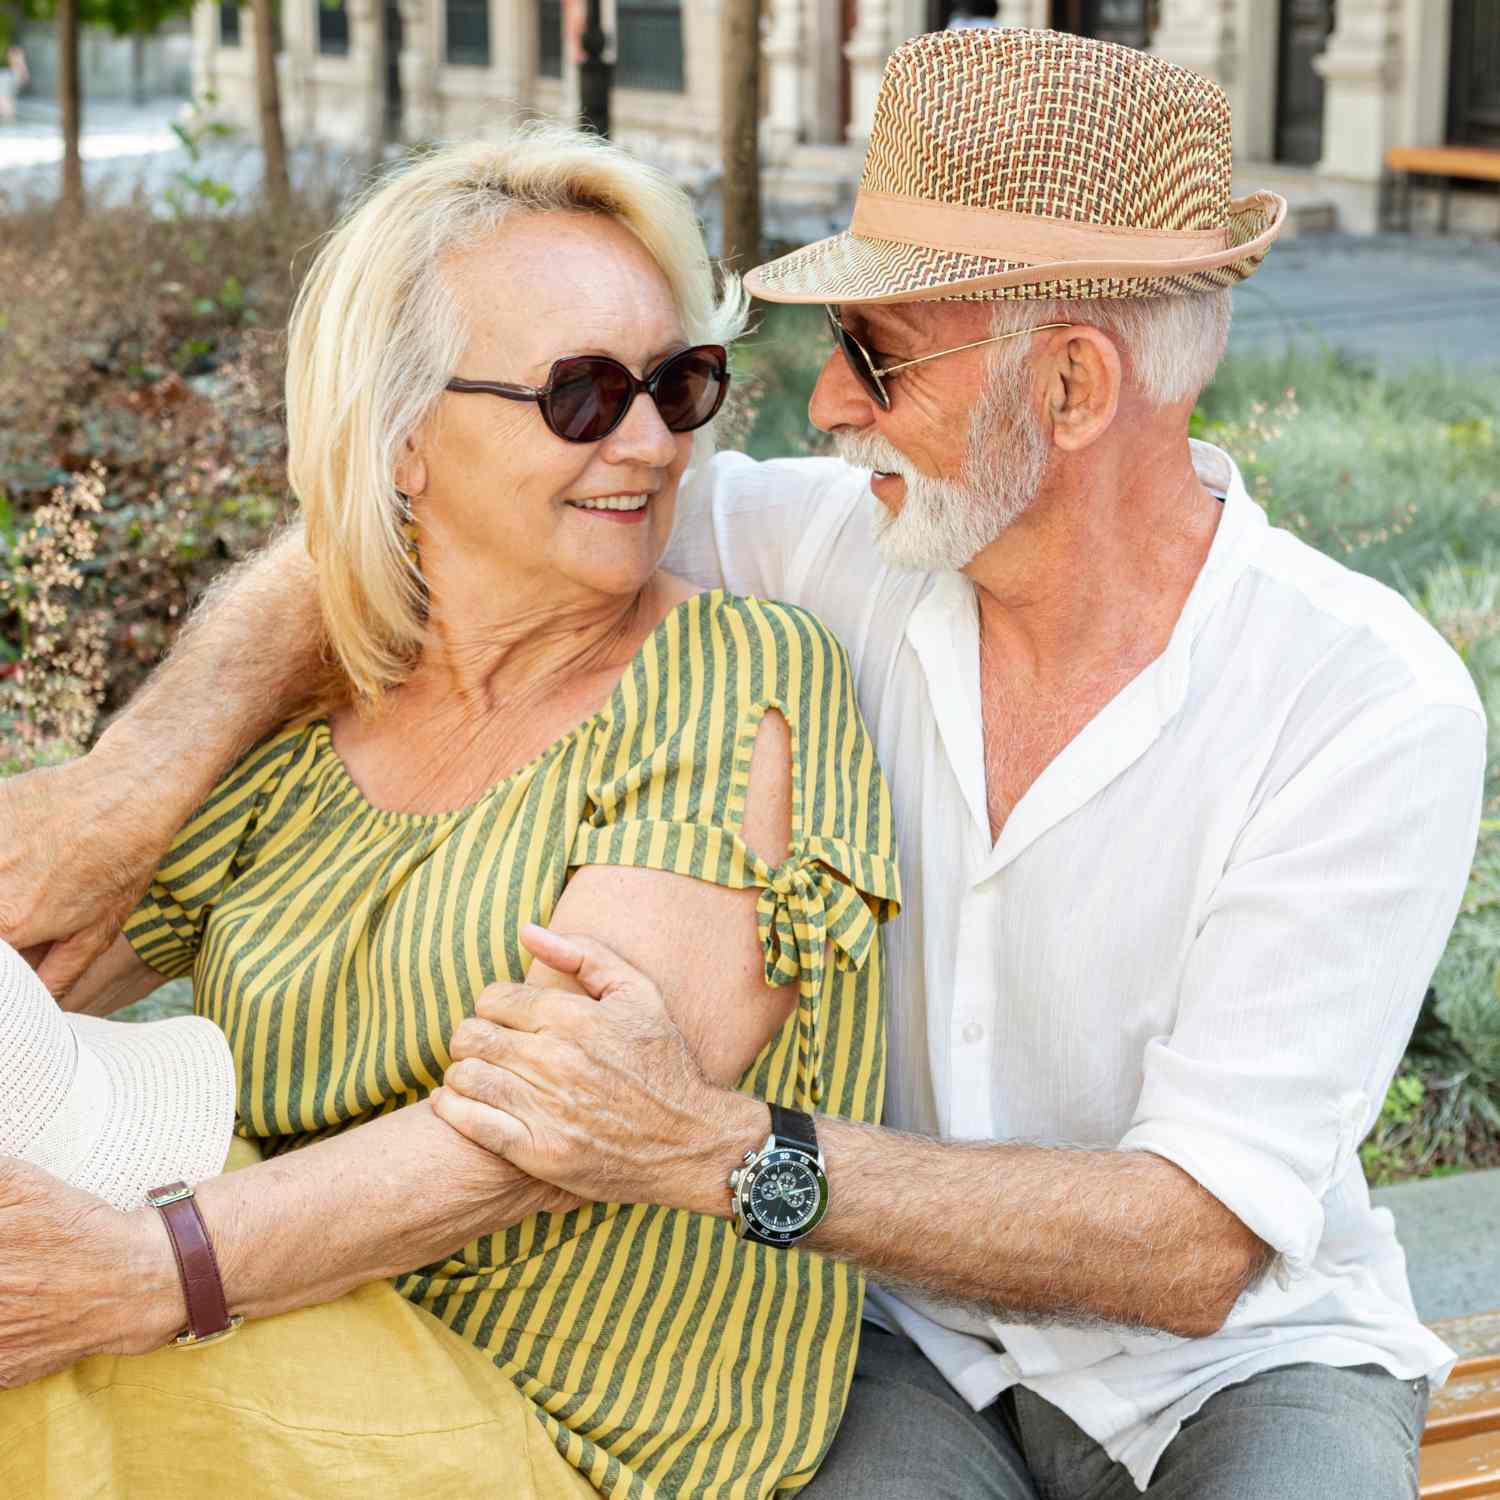 Seniormatch Senior Dating For Men And Women Over 50